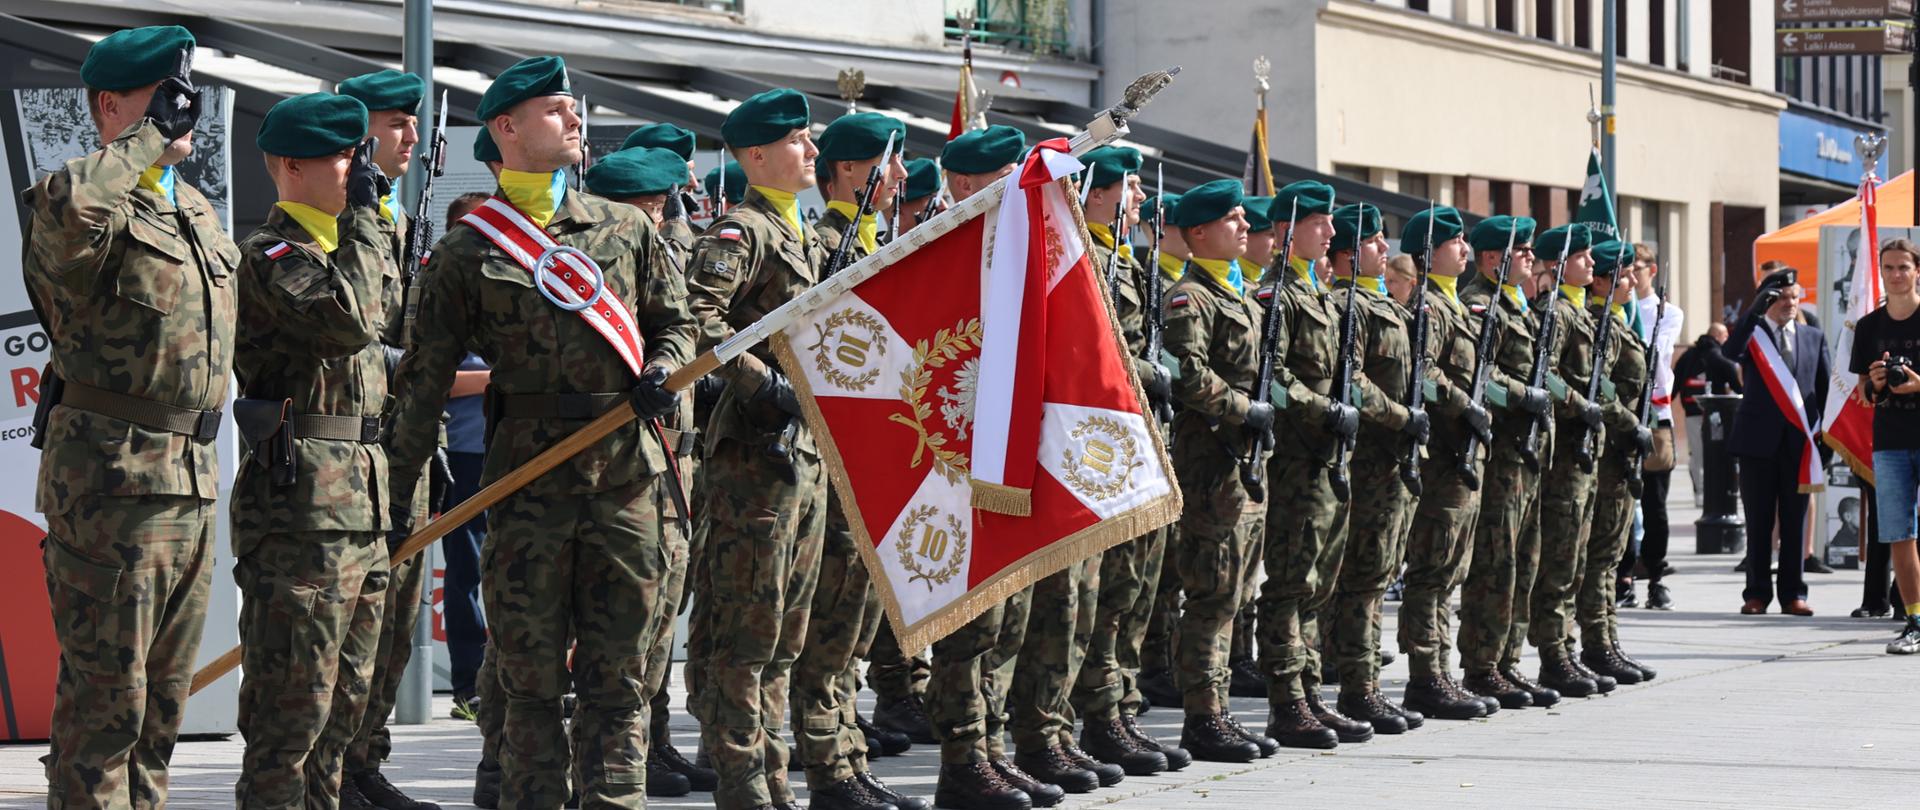 Wojskowa asysta honorowa to jest poczet sztandarowy oraz kompania reprezentacyjna złożona z żołnierzy 10 Brygady Logistycznej oddaje honory.